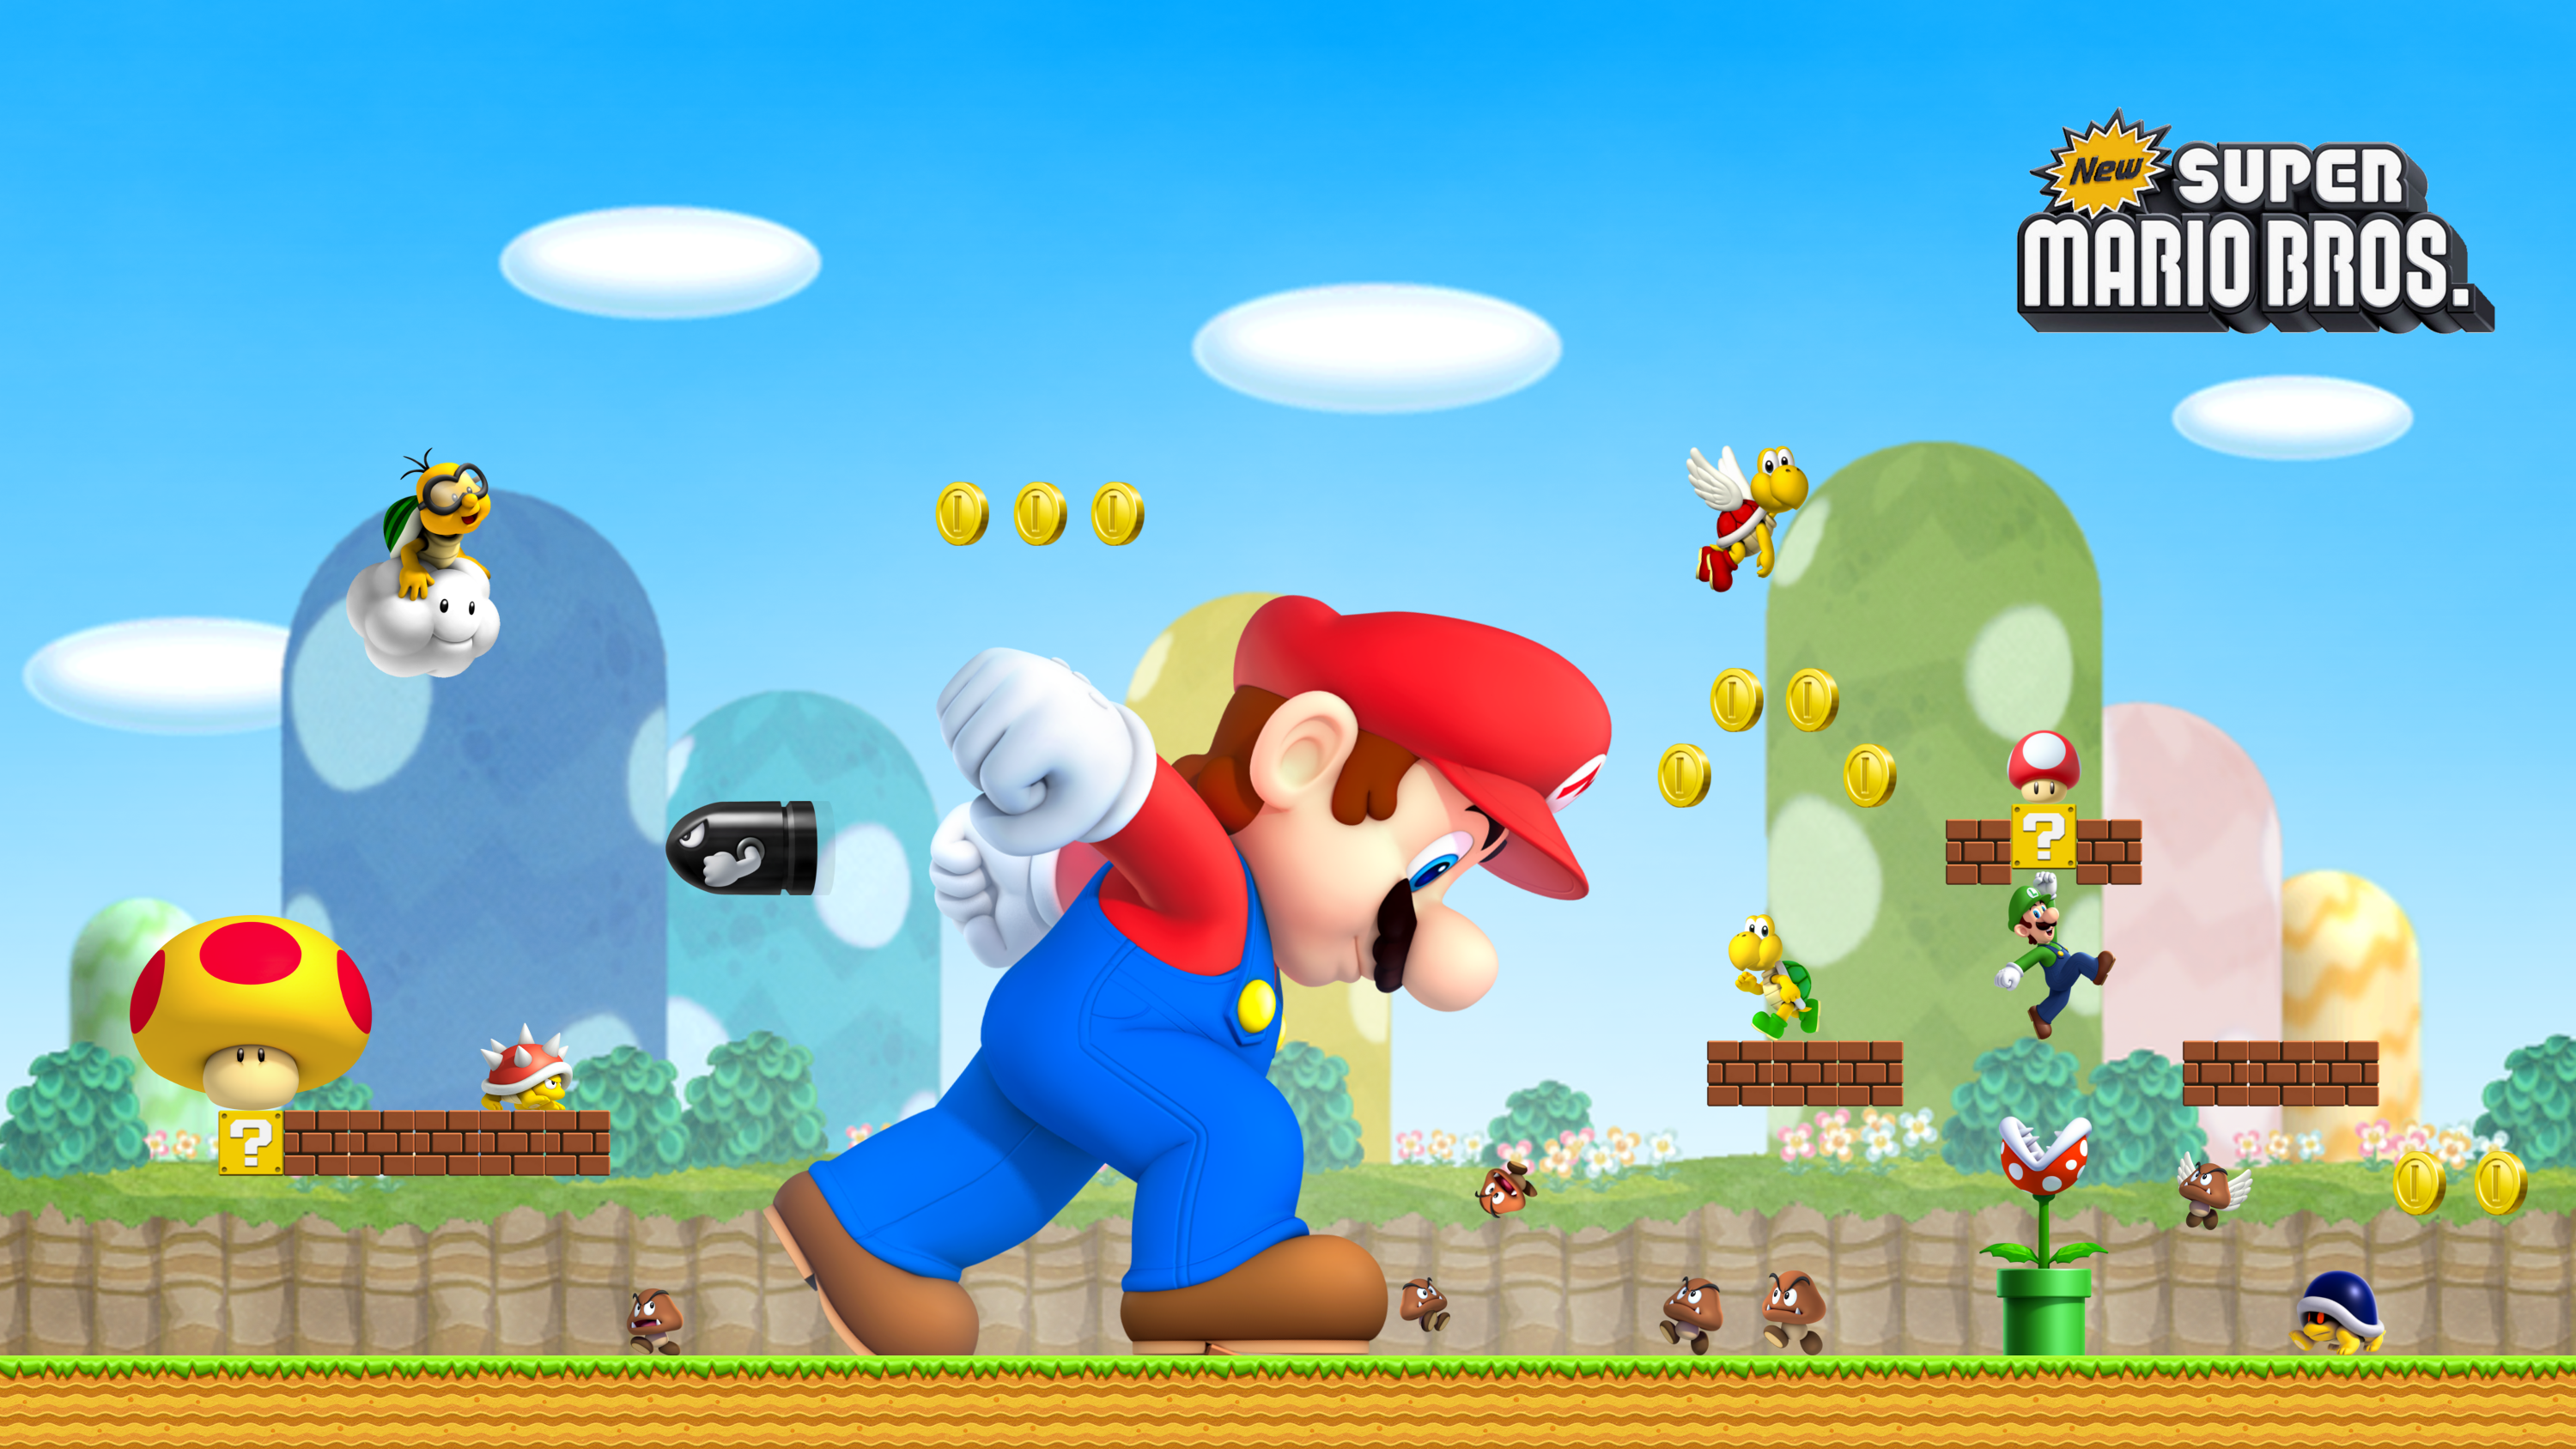 New Super Mario Bros. HD Wallpaper